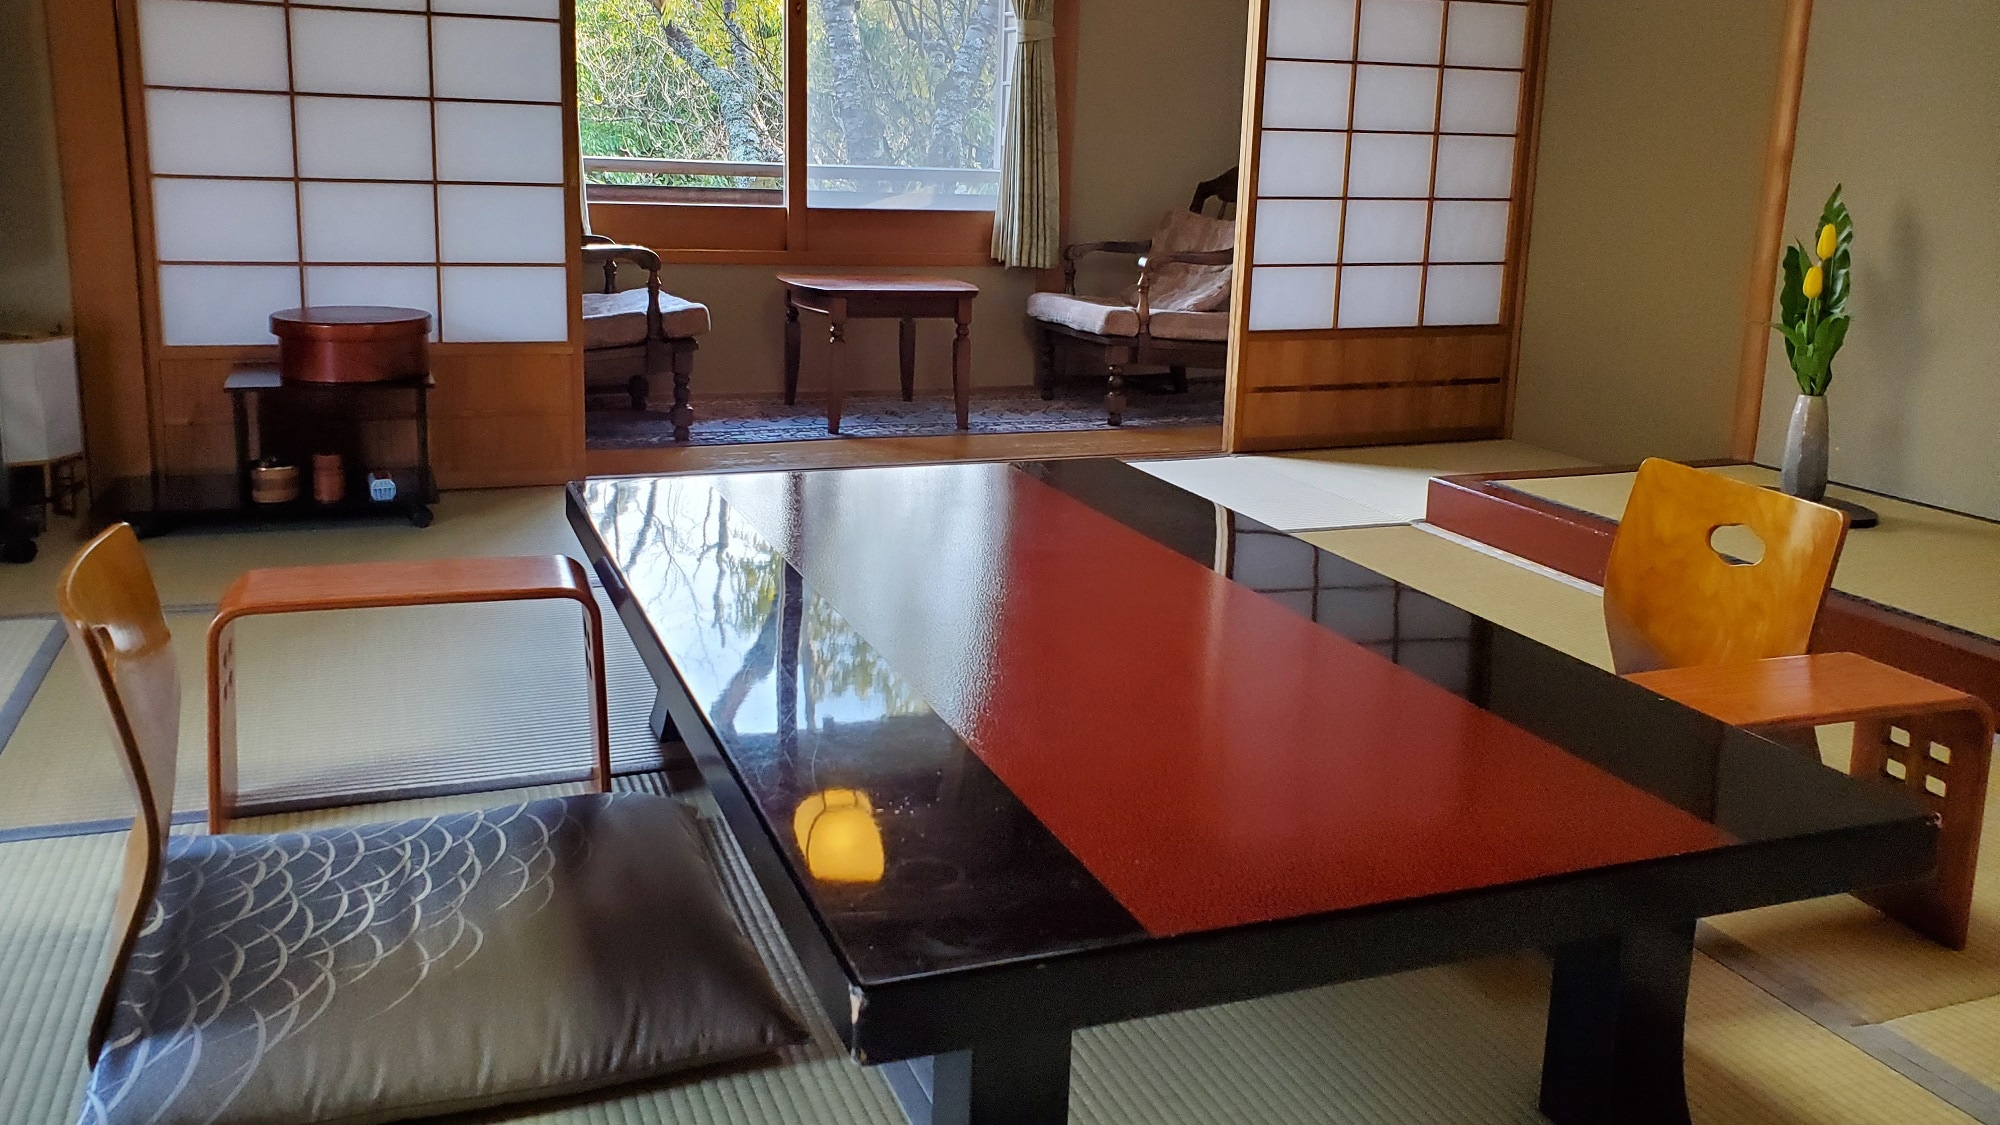 2nd floor Japanese-style room 10 tatami mats